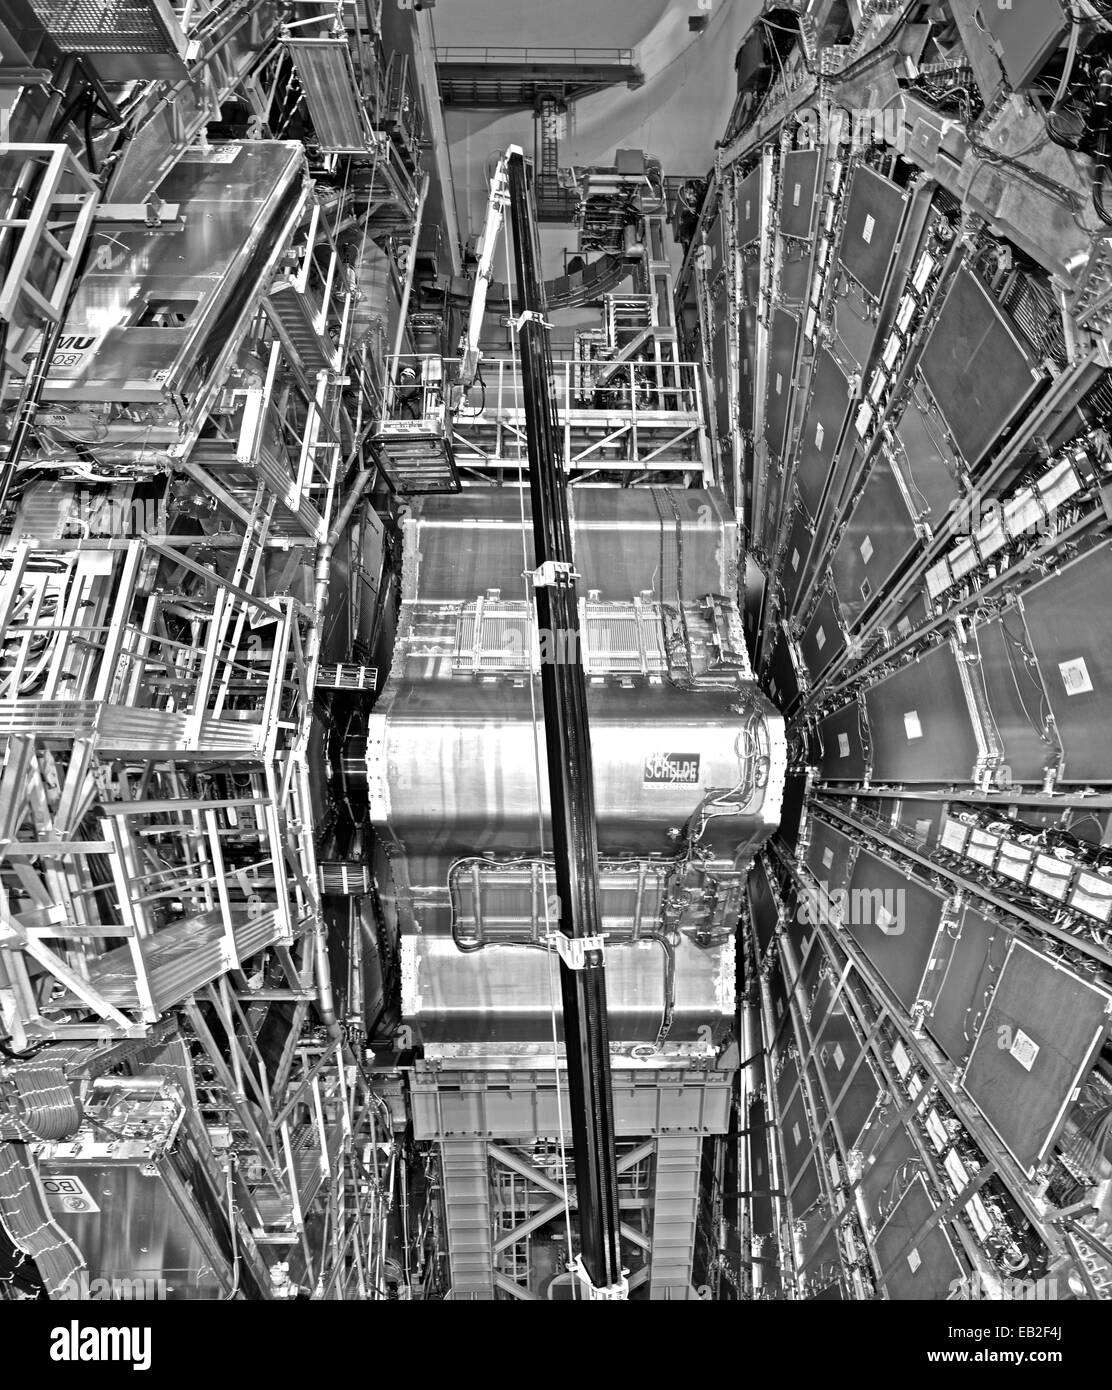 Die ATLAS-Höhle befindet sich 92 Meter unter der Erde, hält der Large Hadron Collider, ein Teilchenbeschleuniger der Europäischen Organisation für Kernforschung. Stockfoto